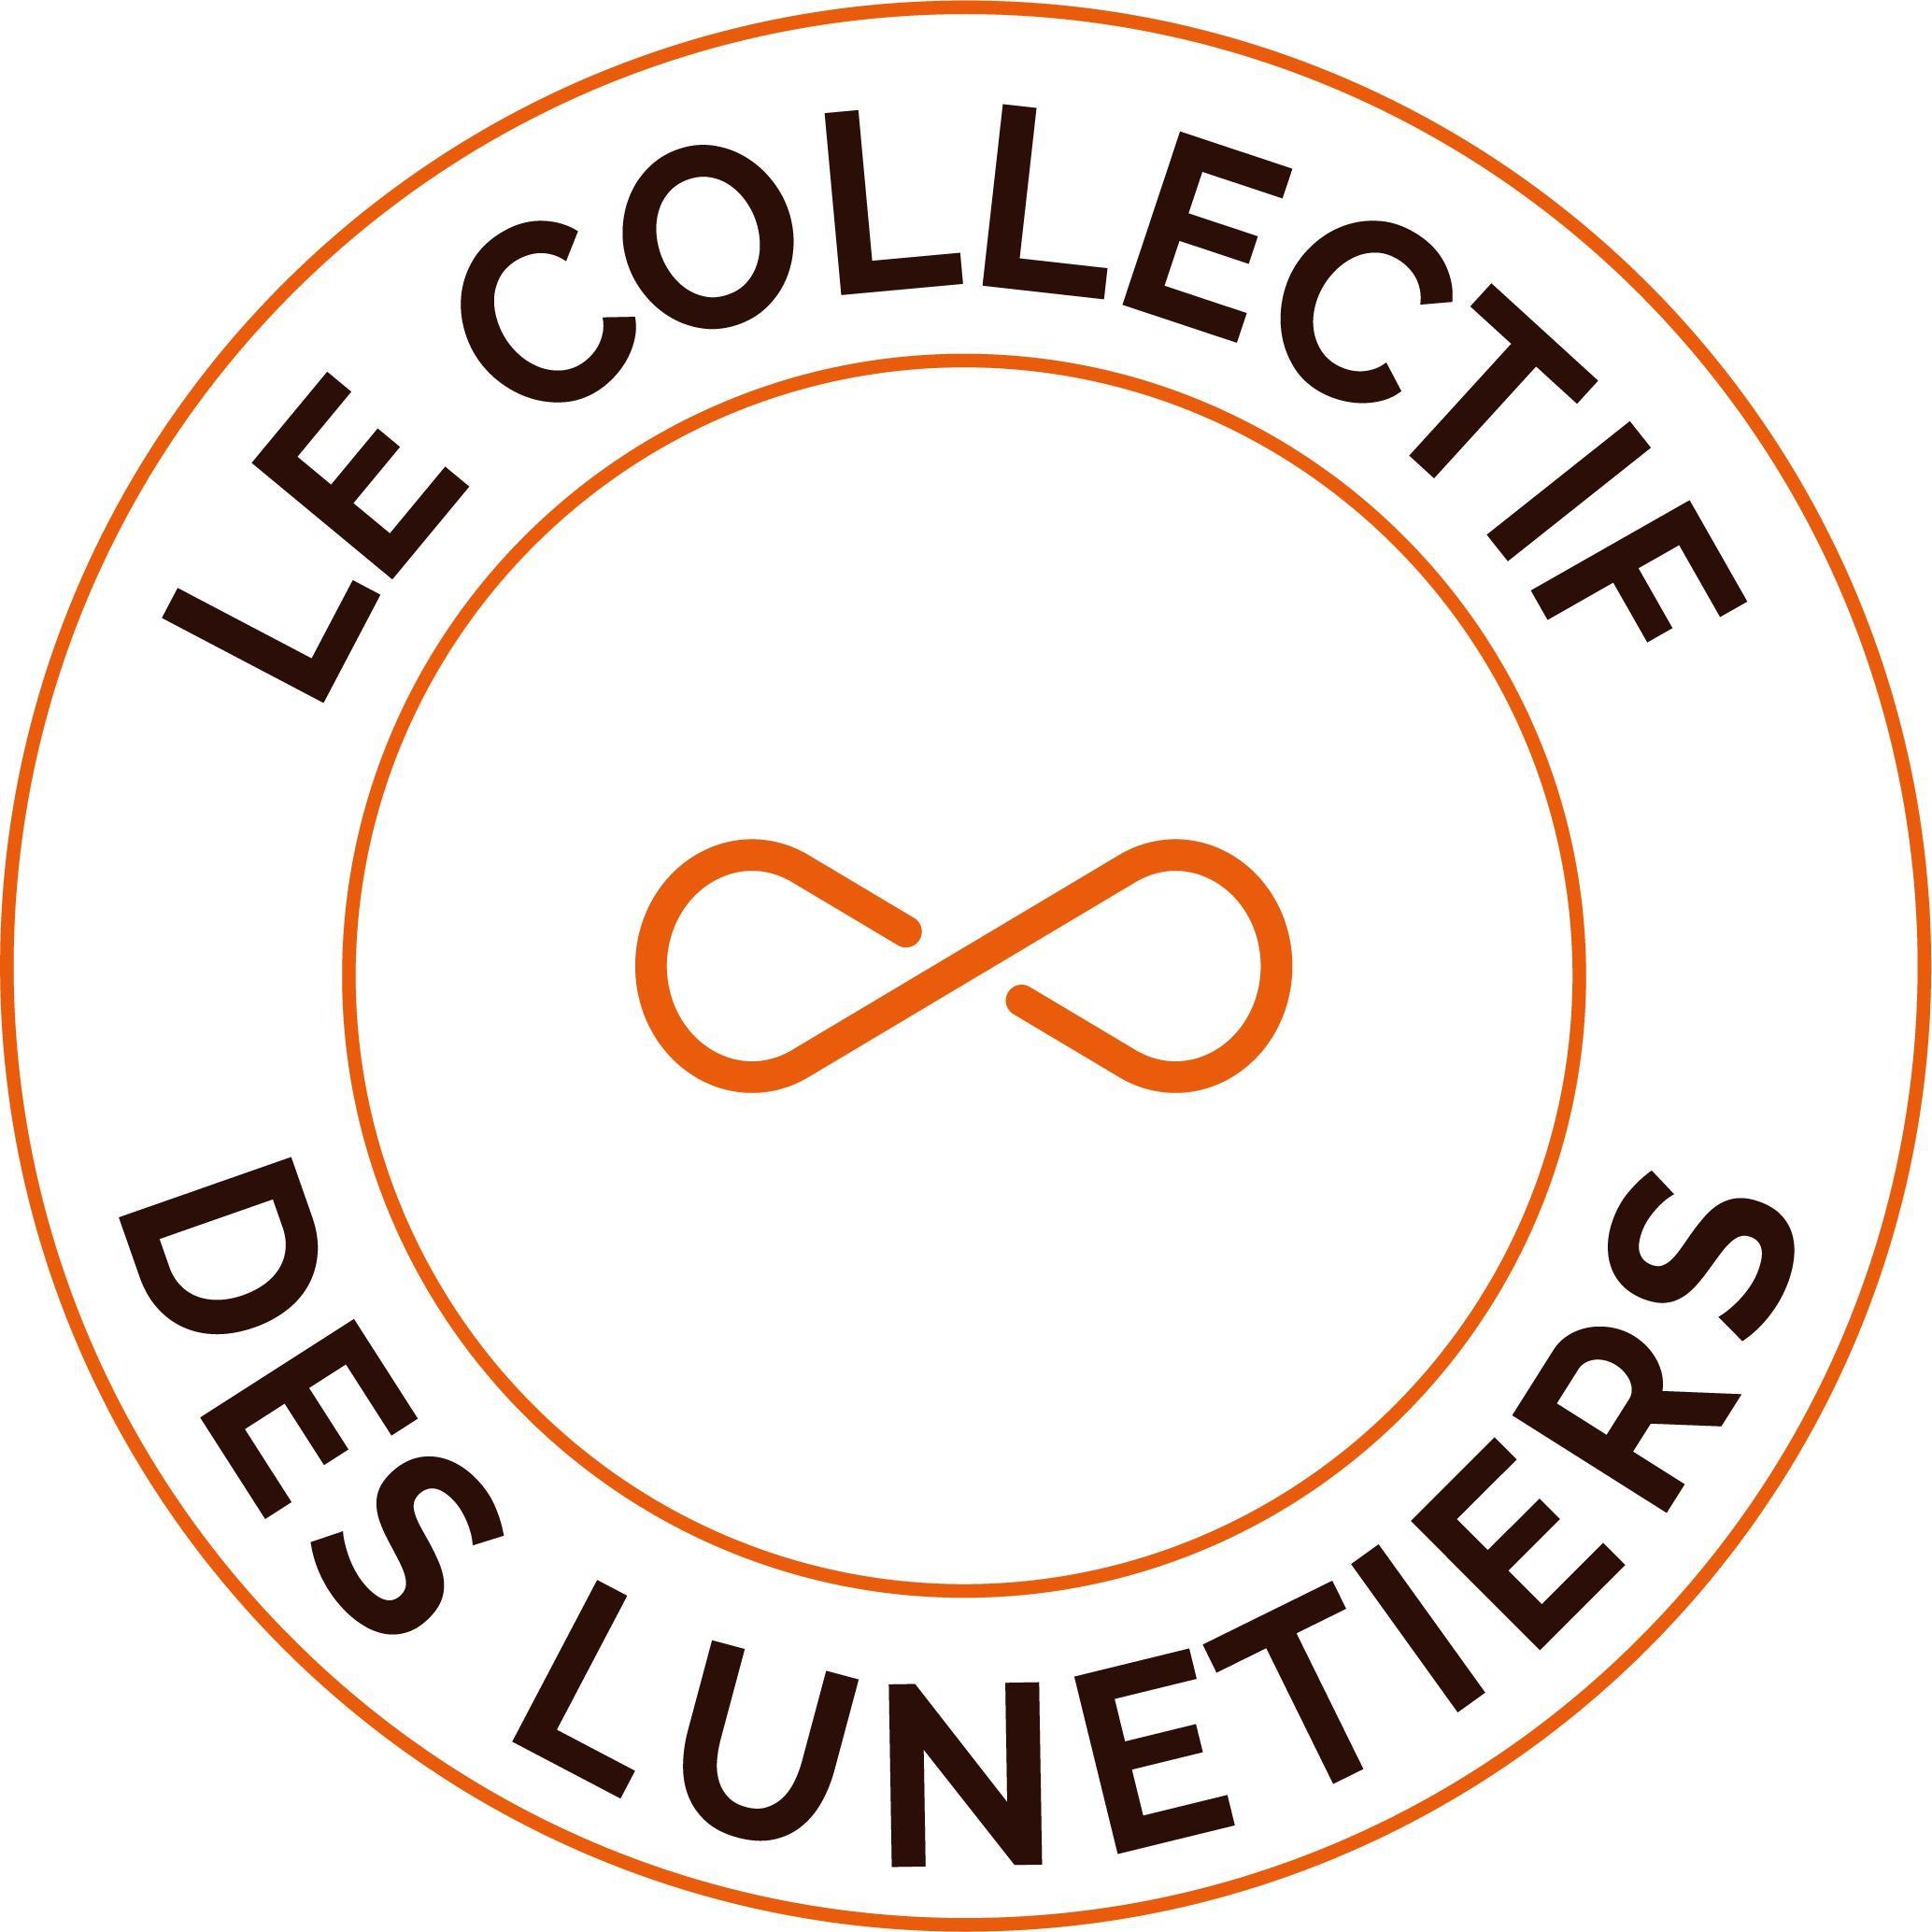 Le Collectif Des Lunetiers Ozoir La Ferrière